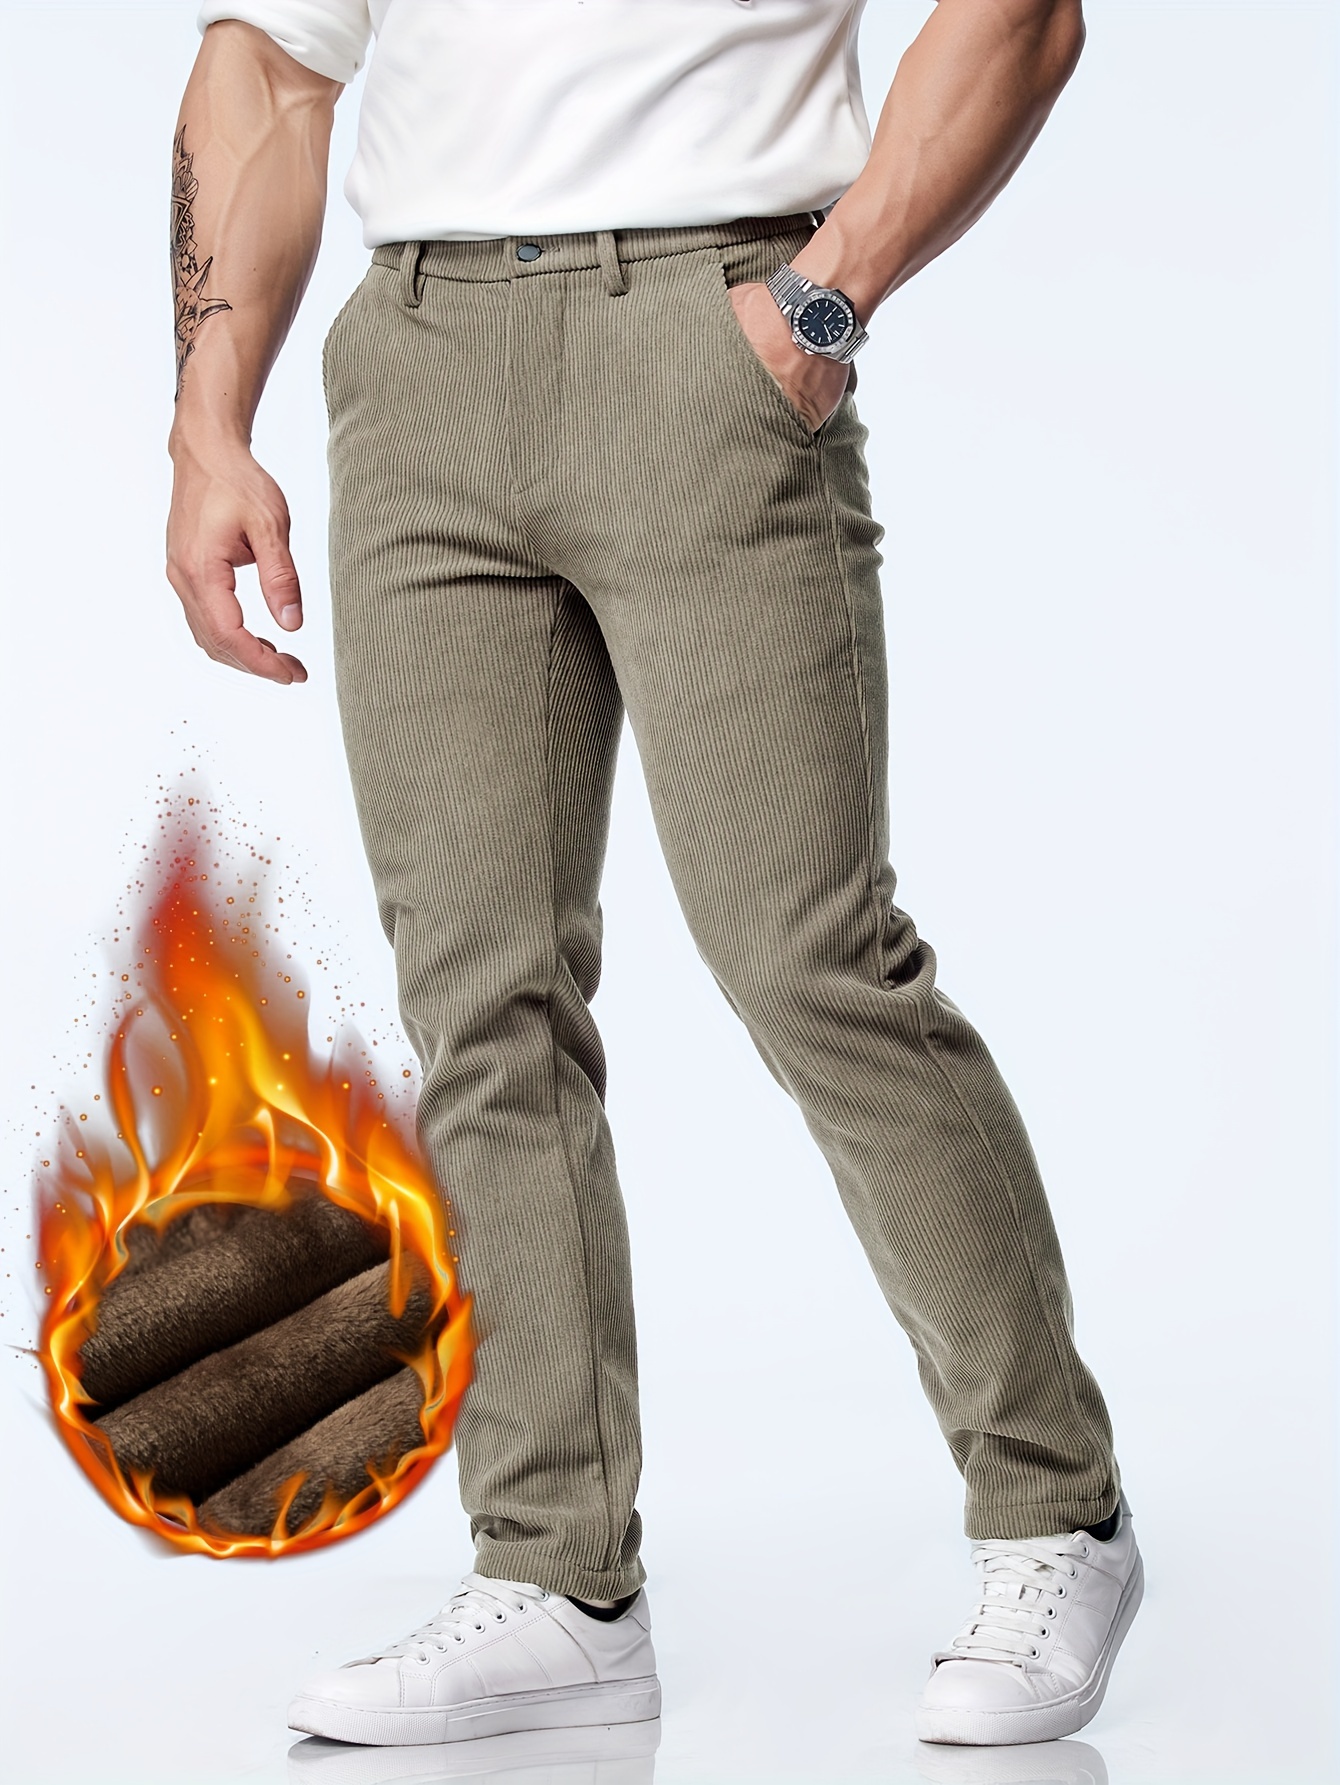 Pantalon cargo chaud d'hiver pour homme avec poches et taille élastiquée